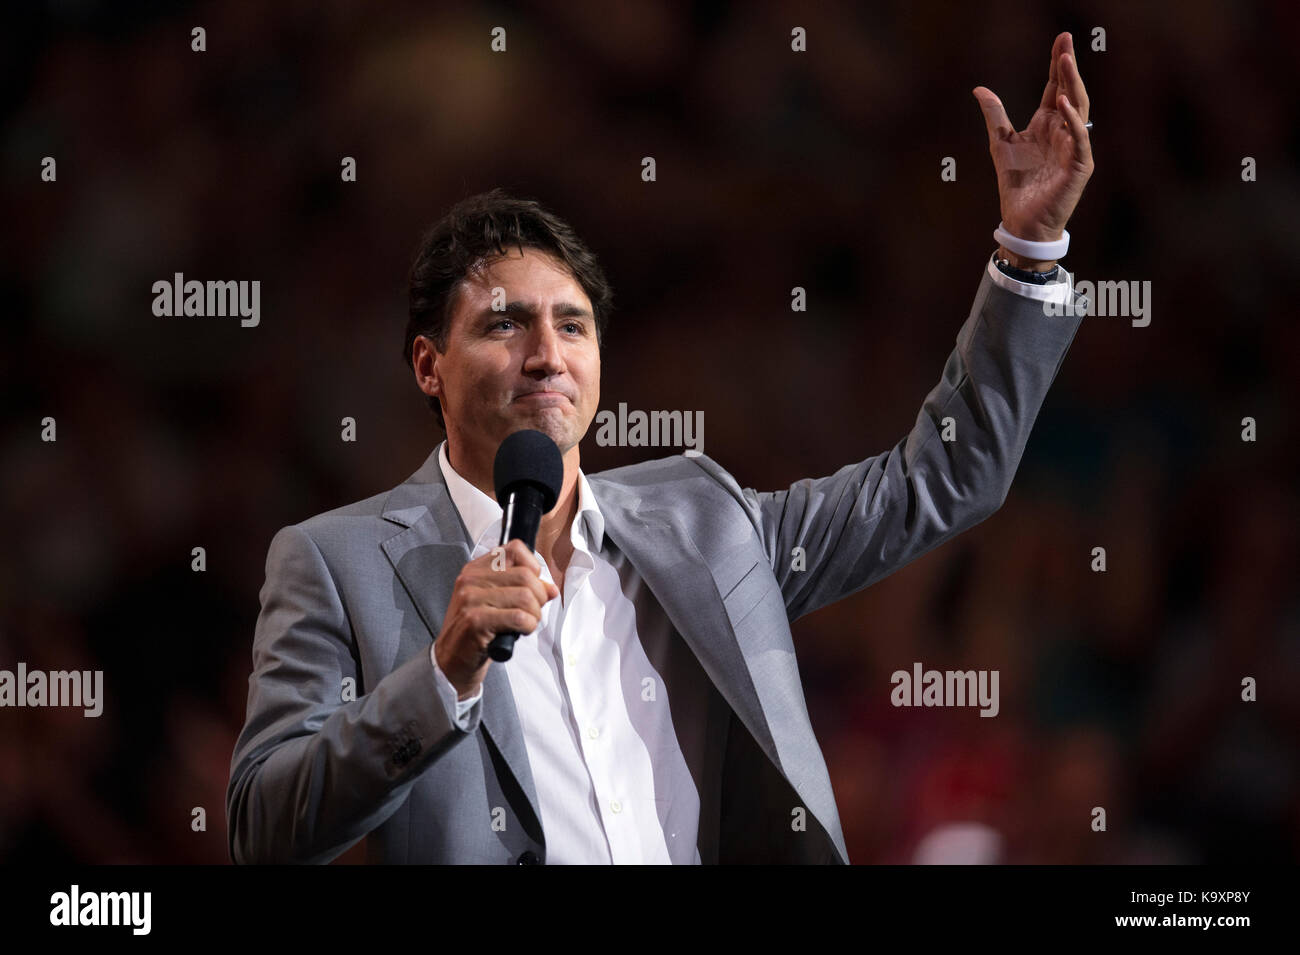 Le premier ministre du Canada, Justin Trudeau parle au cours de la cérémonie d'ouverture des Jeux 2017 Invictus à Toronto, Canada, le 23 septembre 2017. Banque D'Images